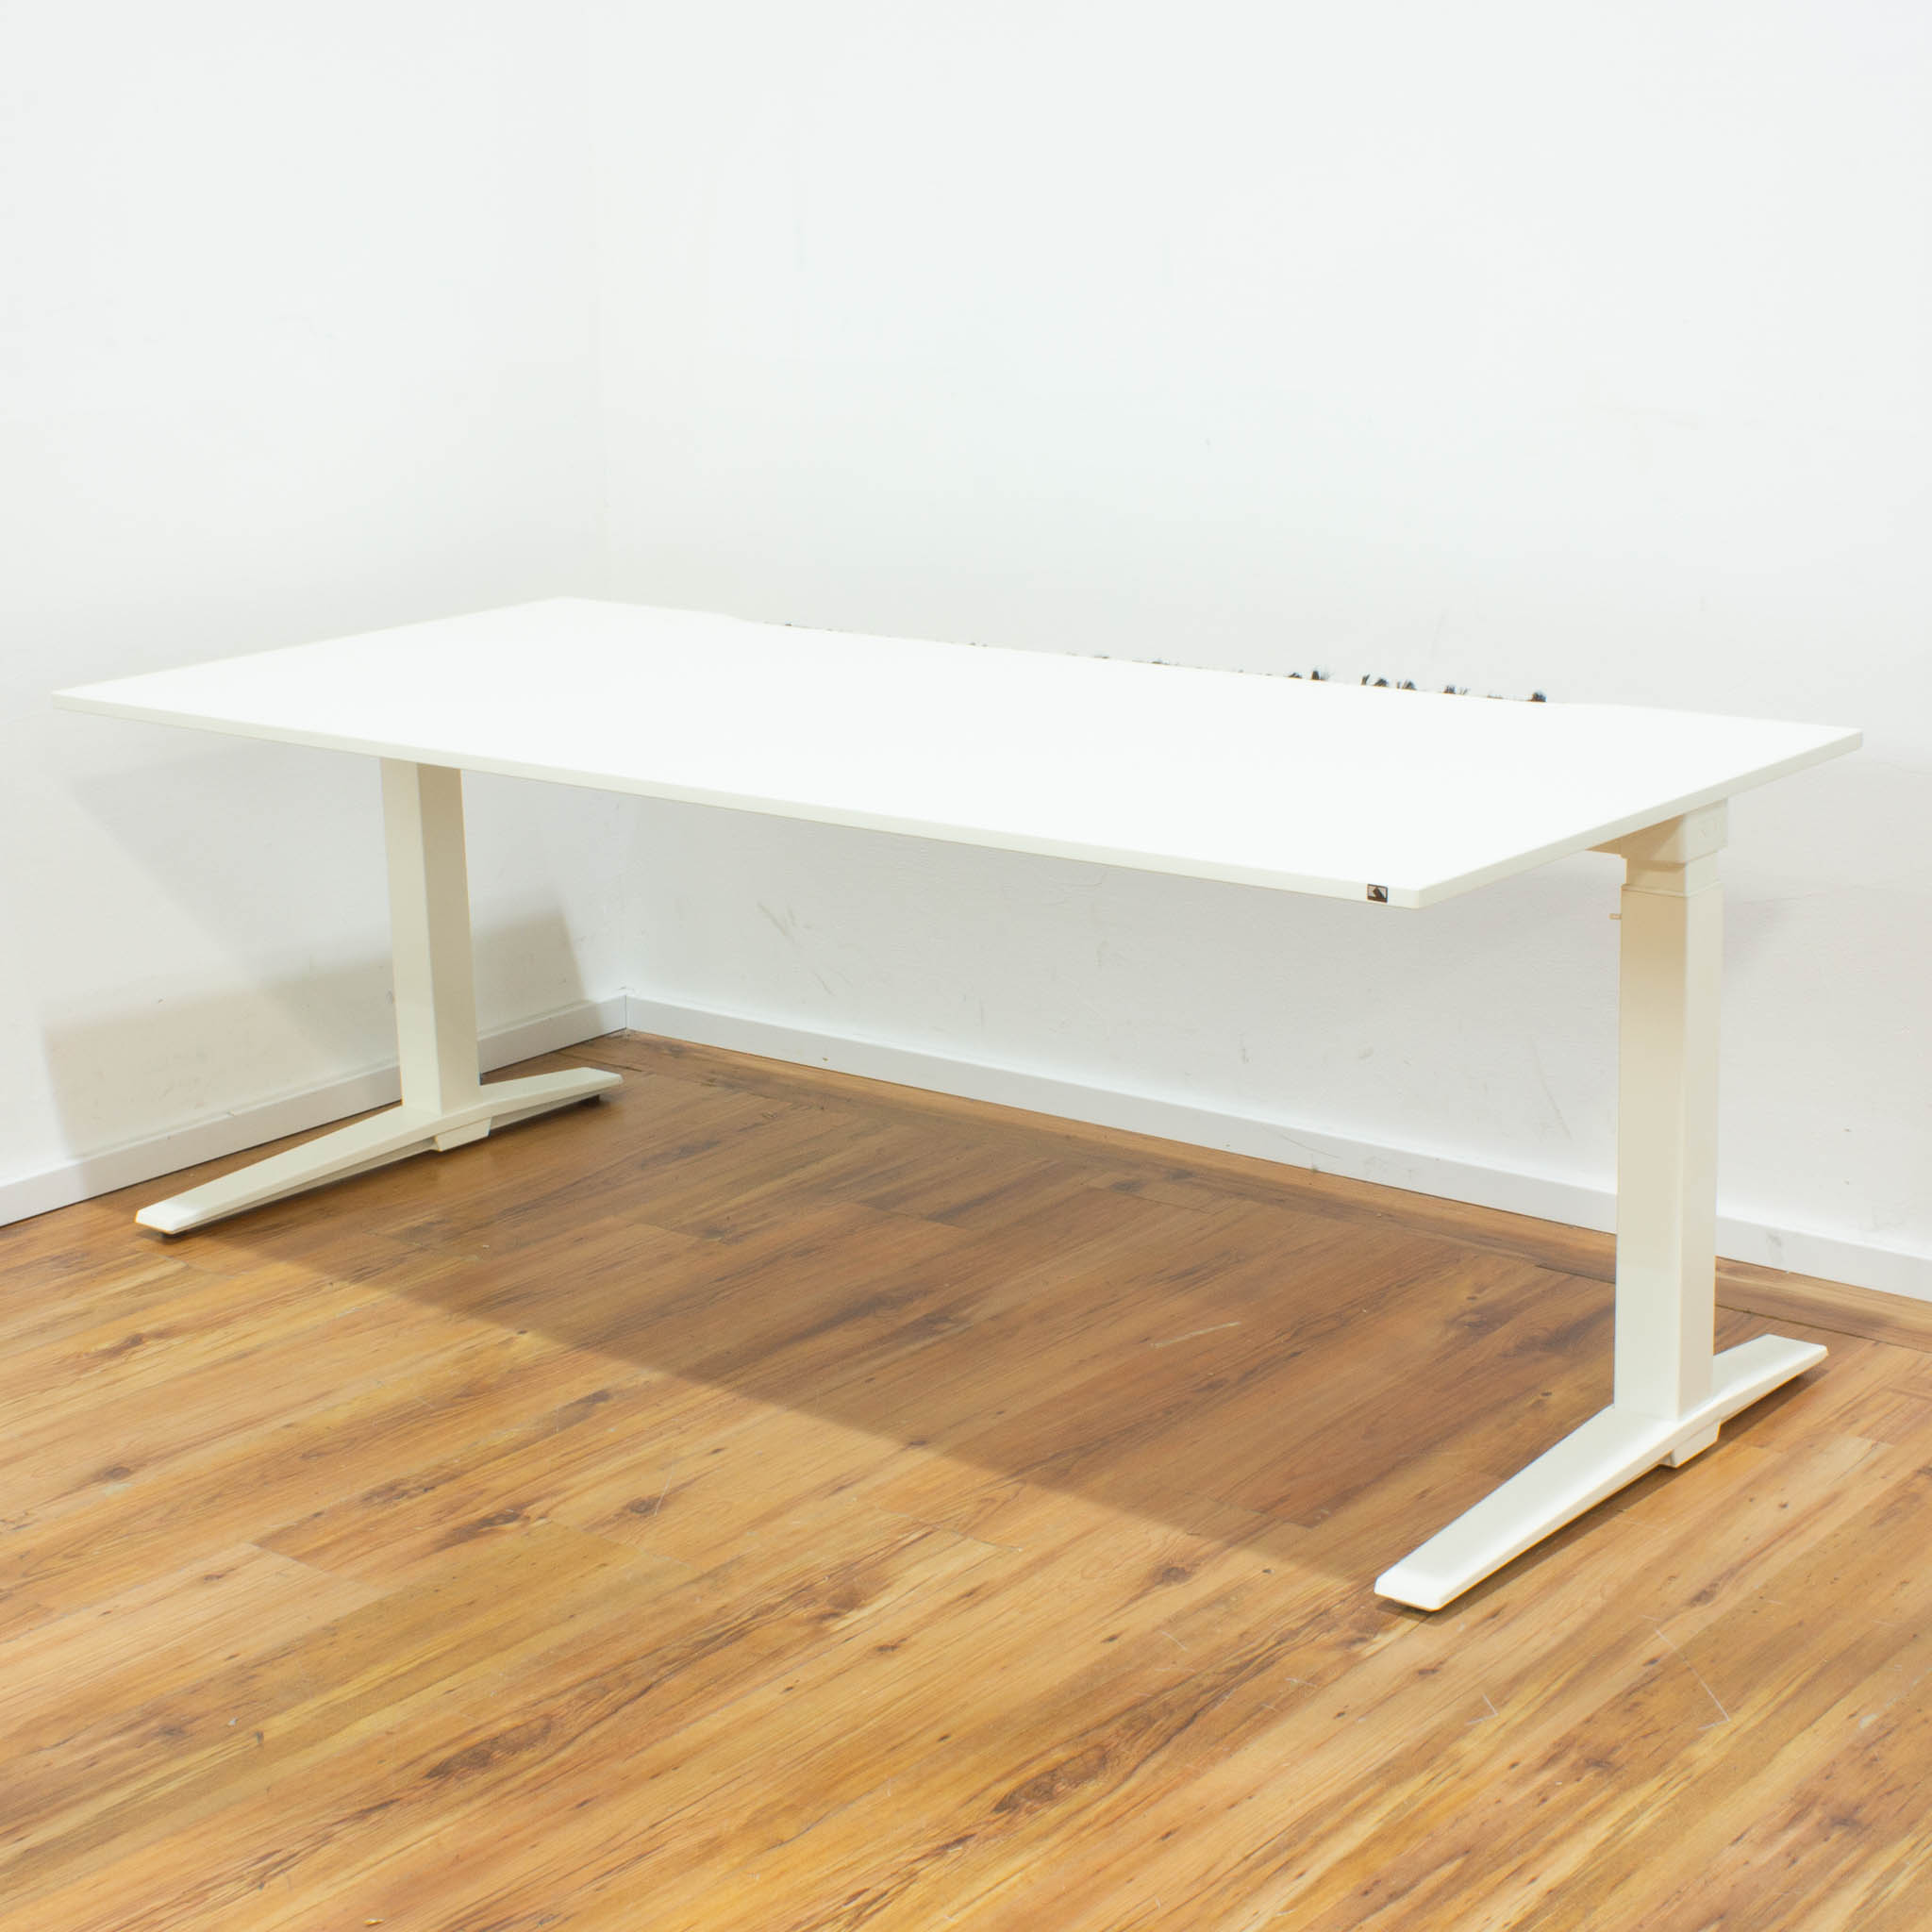 König + Neurath Schreibtisch - 180 x 80 cm - weiß